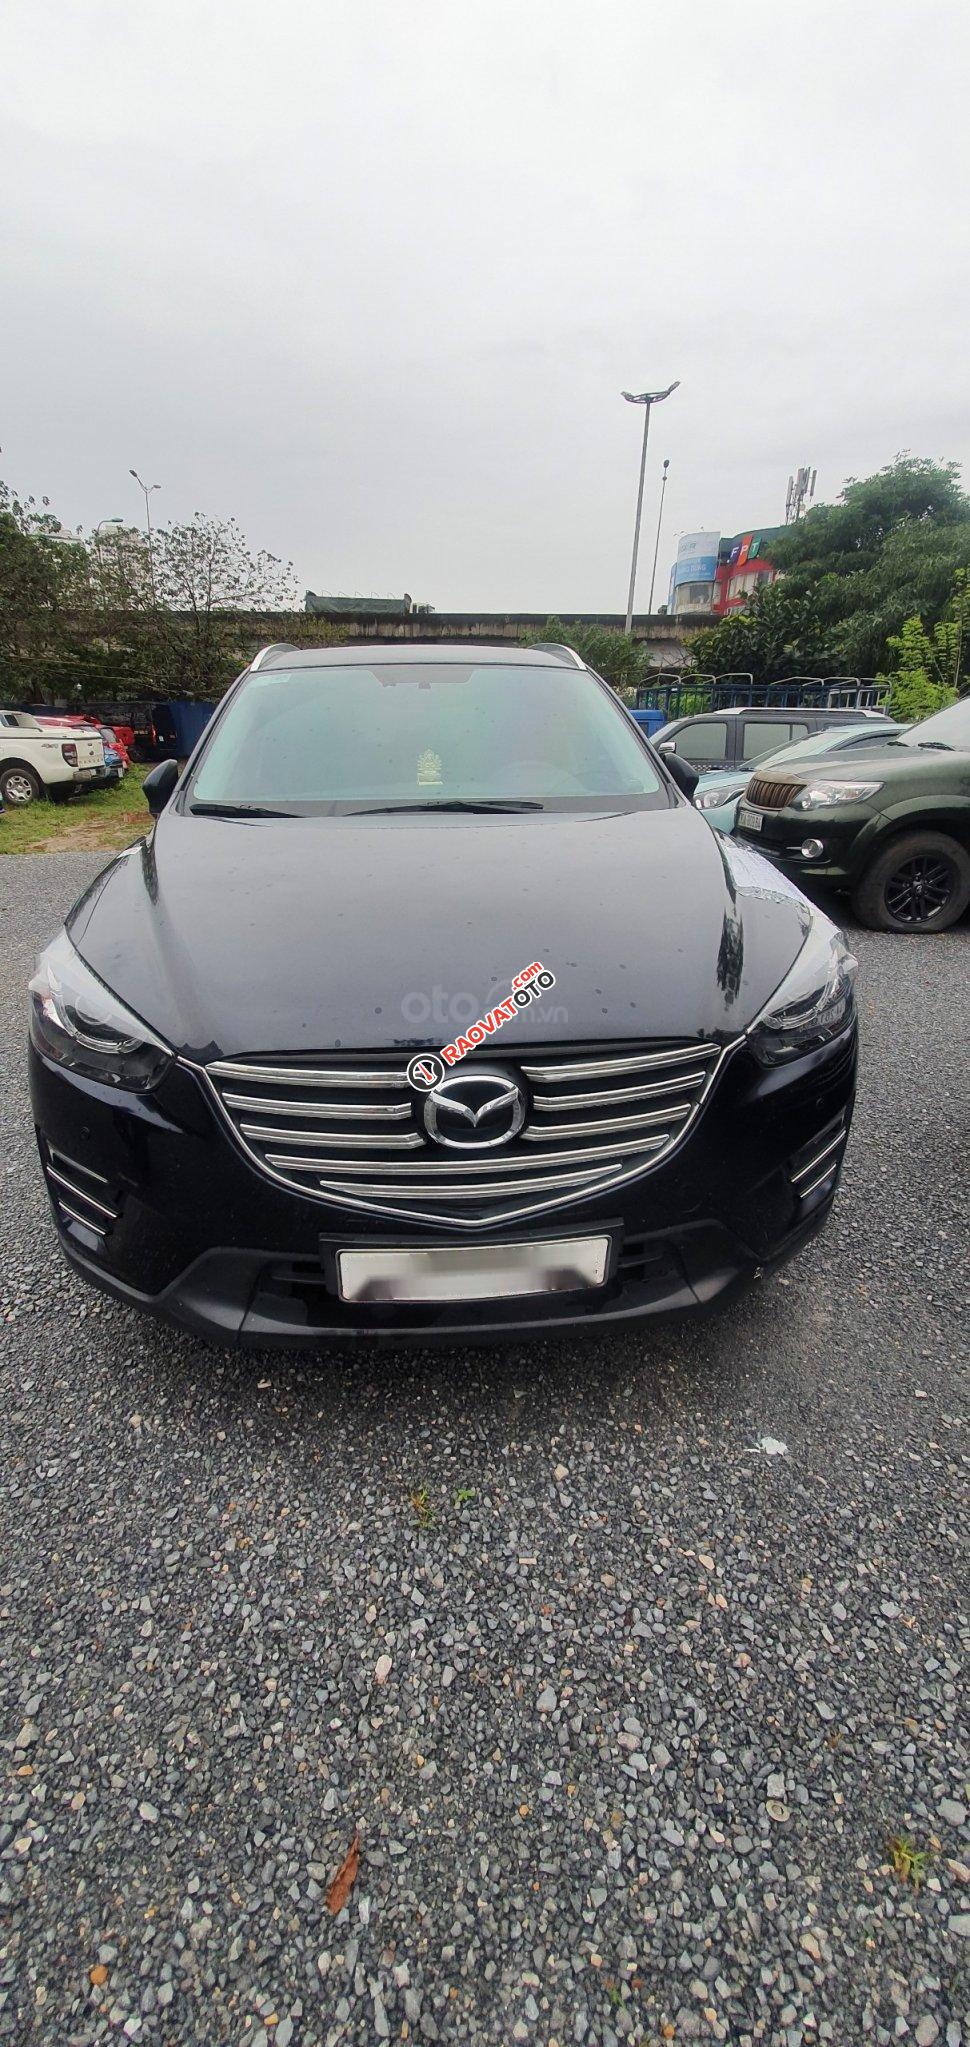 Ngân hàng bán đấu giá chiếc Mazda CX 5 năm sản xuất 2017, màu đen-1